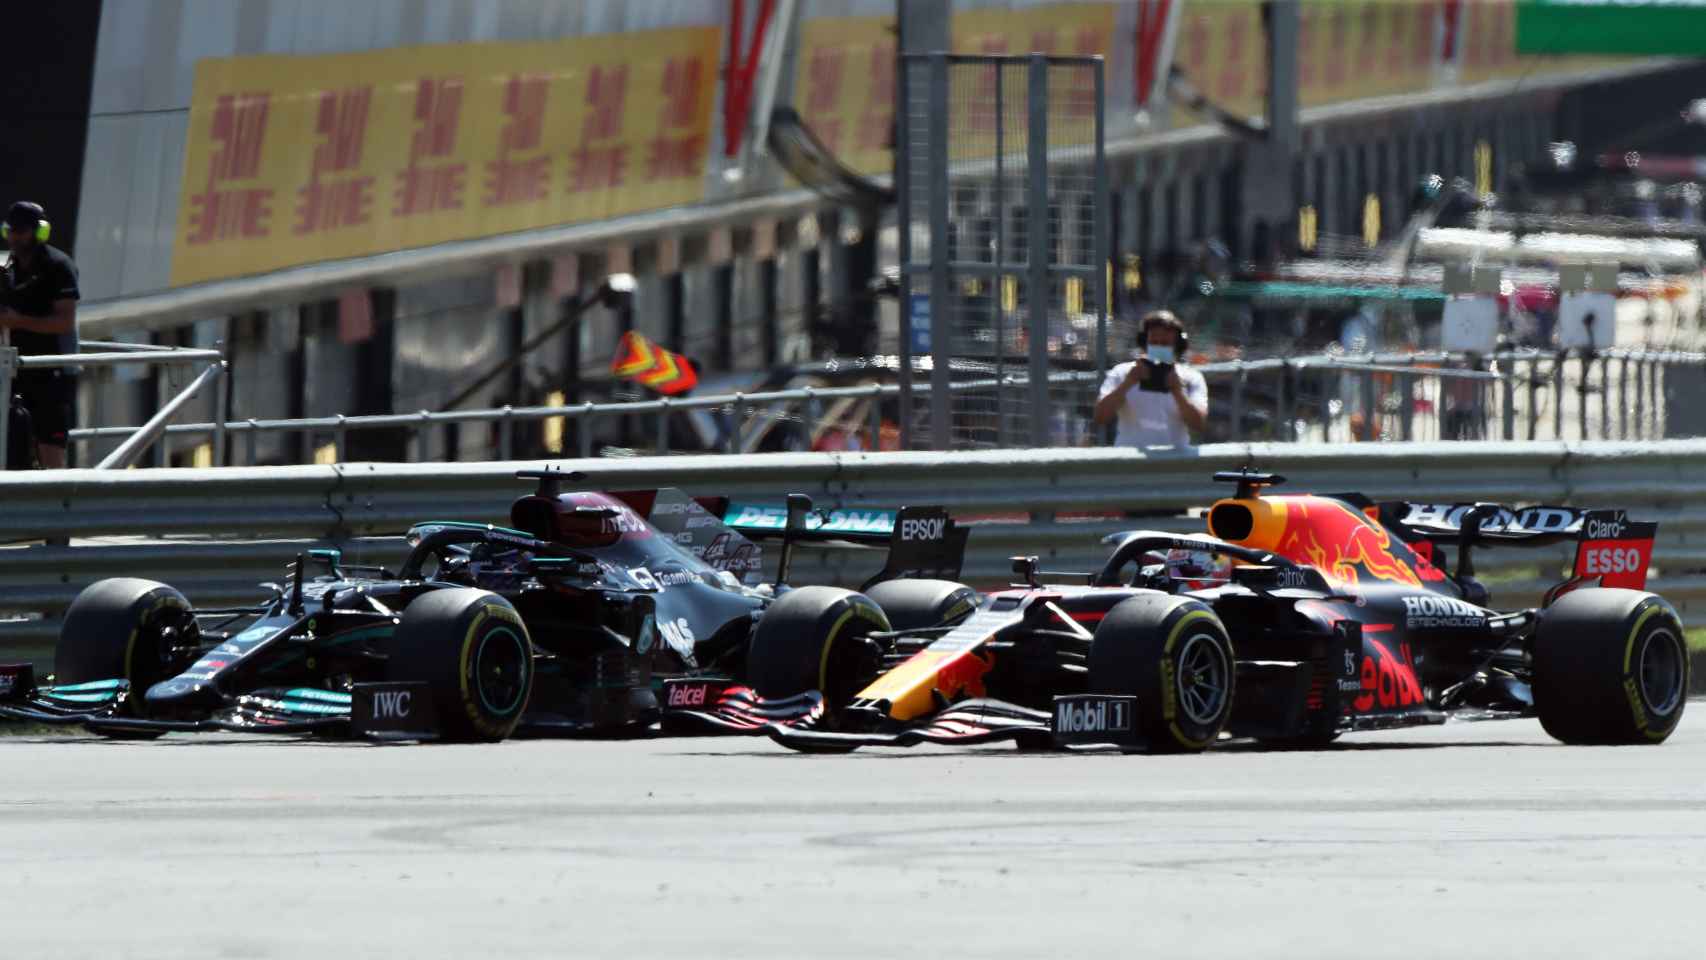 El momento previo al toque entre Lewis Hamilton y Max Verstappen en Silverstone